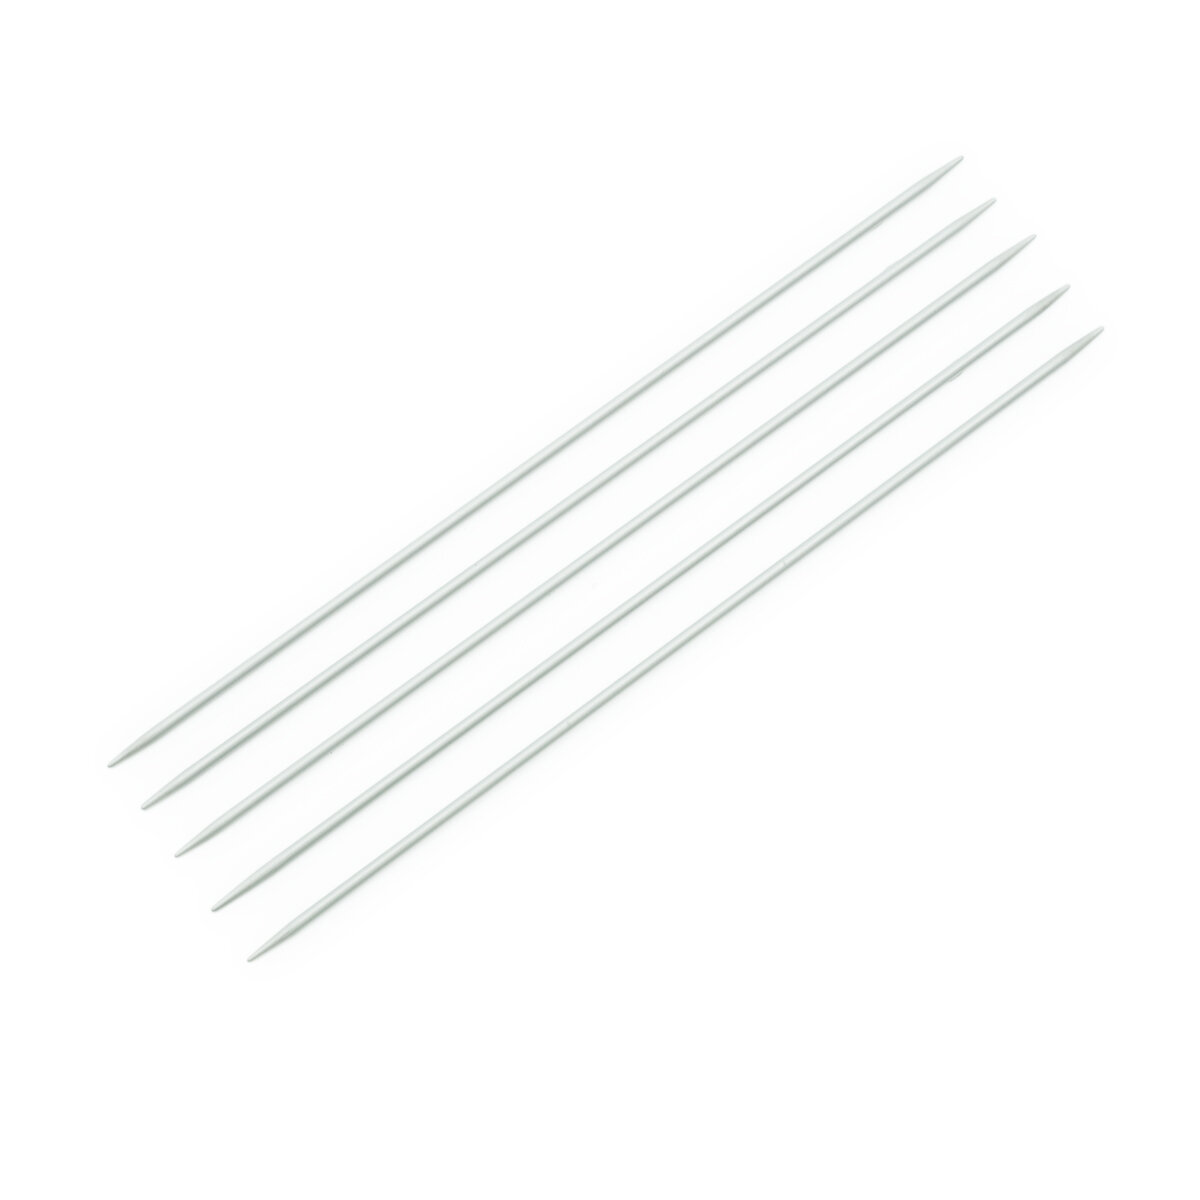 Спицы Prym алюминиевые чулочные (5 шт), диаметр 2.5 мм, длина 20 см, общая длина 20 см, жемчужно-серый